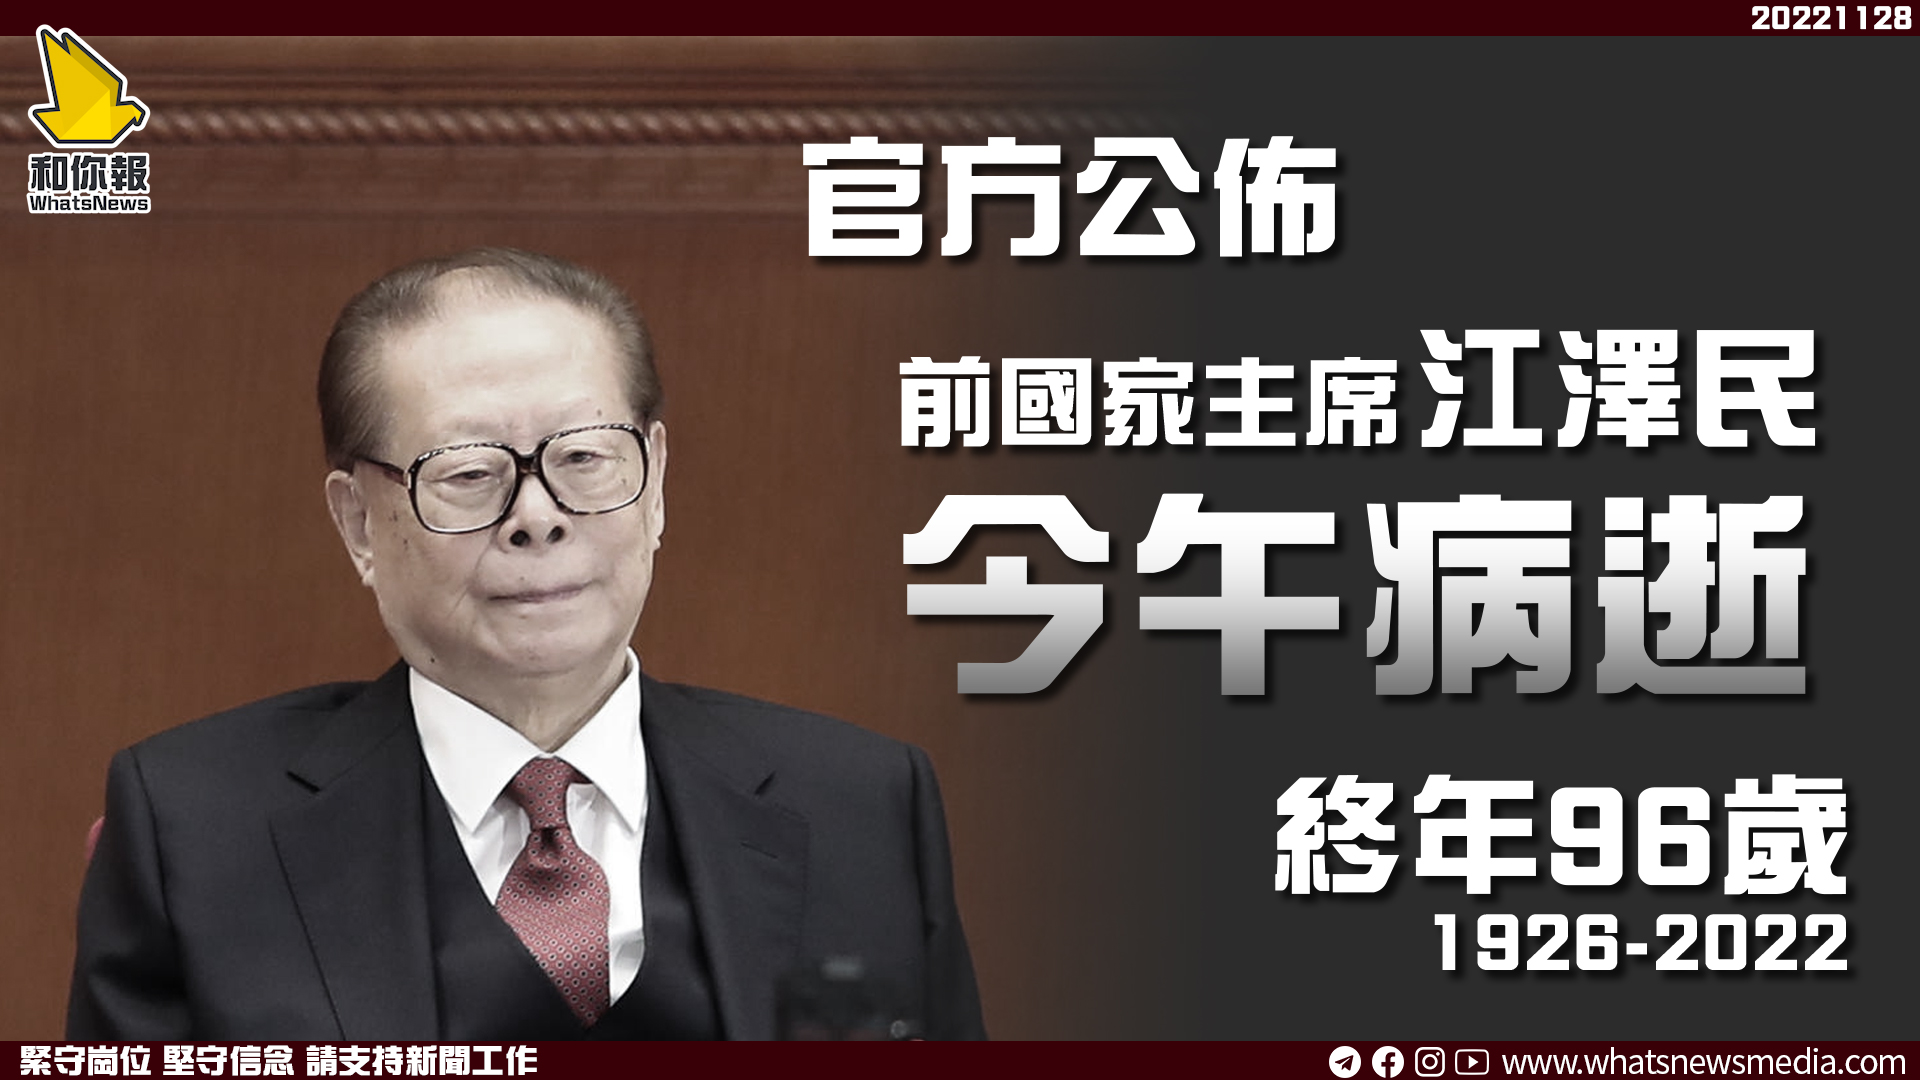 官方公佈前國家主席江澤民今午病逝 終年96歲